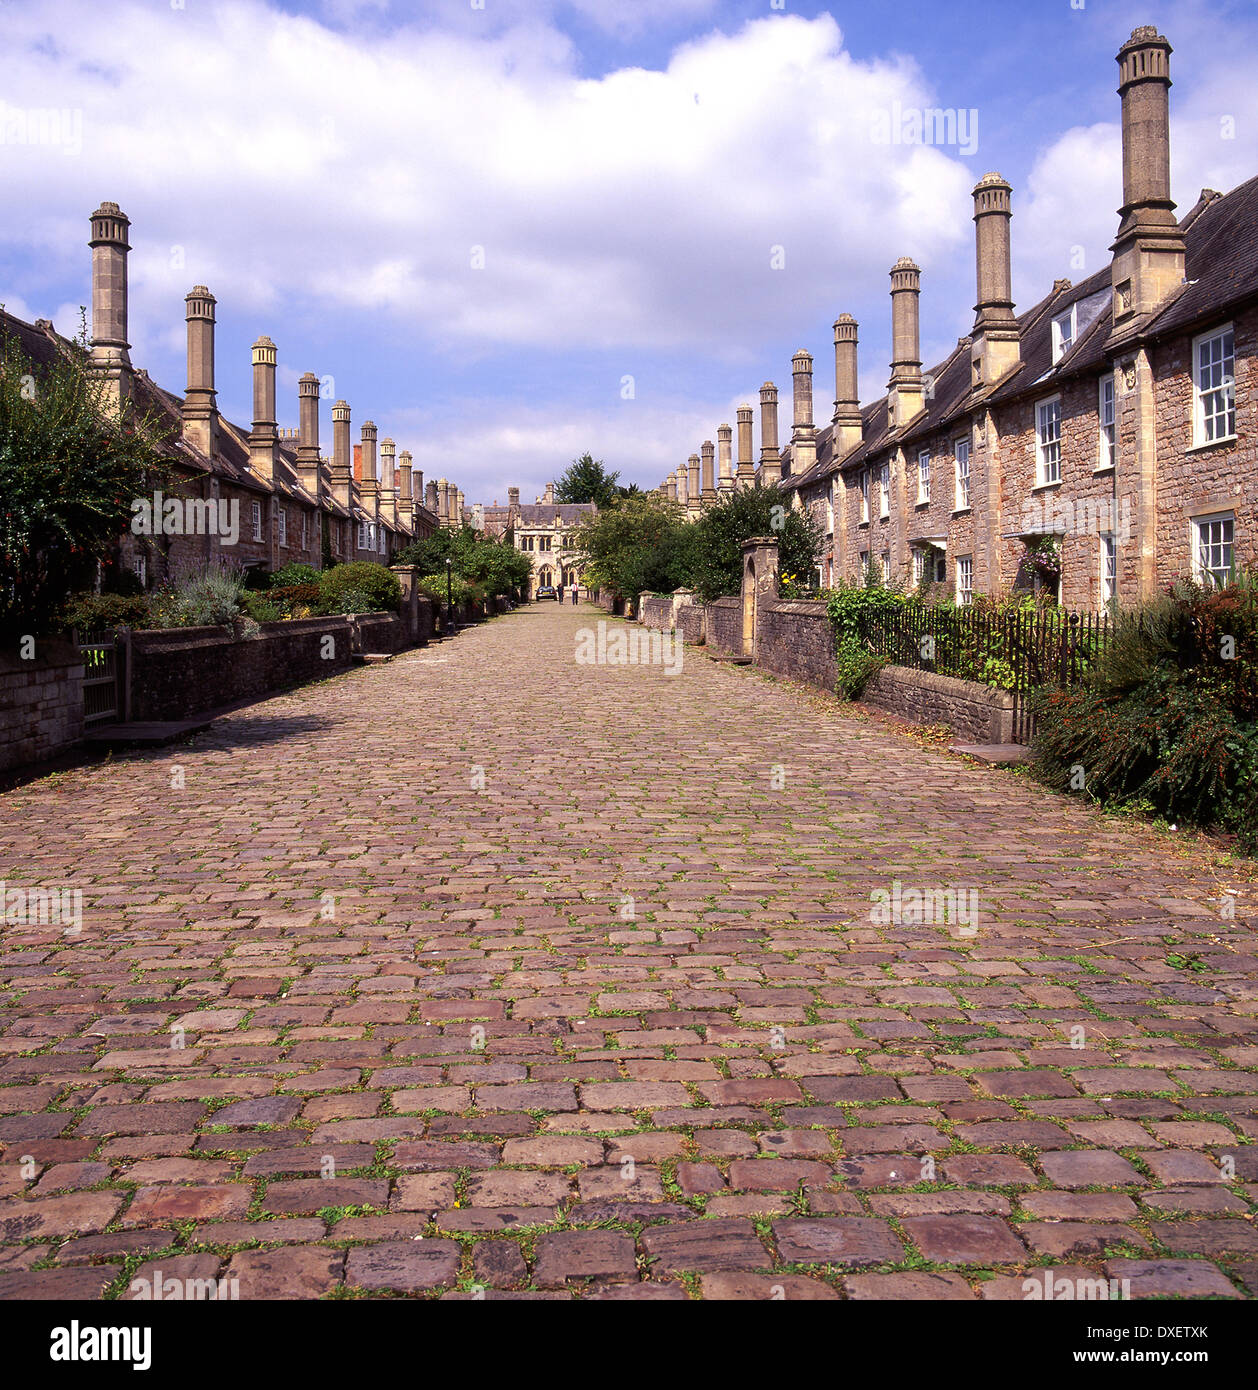 Pflastersteine in enger Vikare in Richtung Dom, Kapelle und libray.city von Wells, Somerset, England. Stockfoto